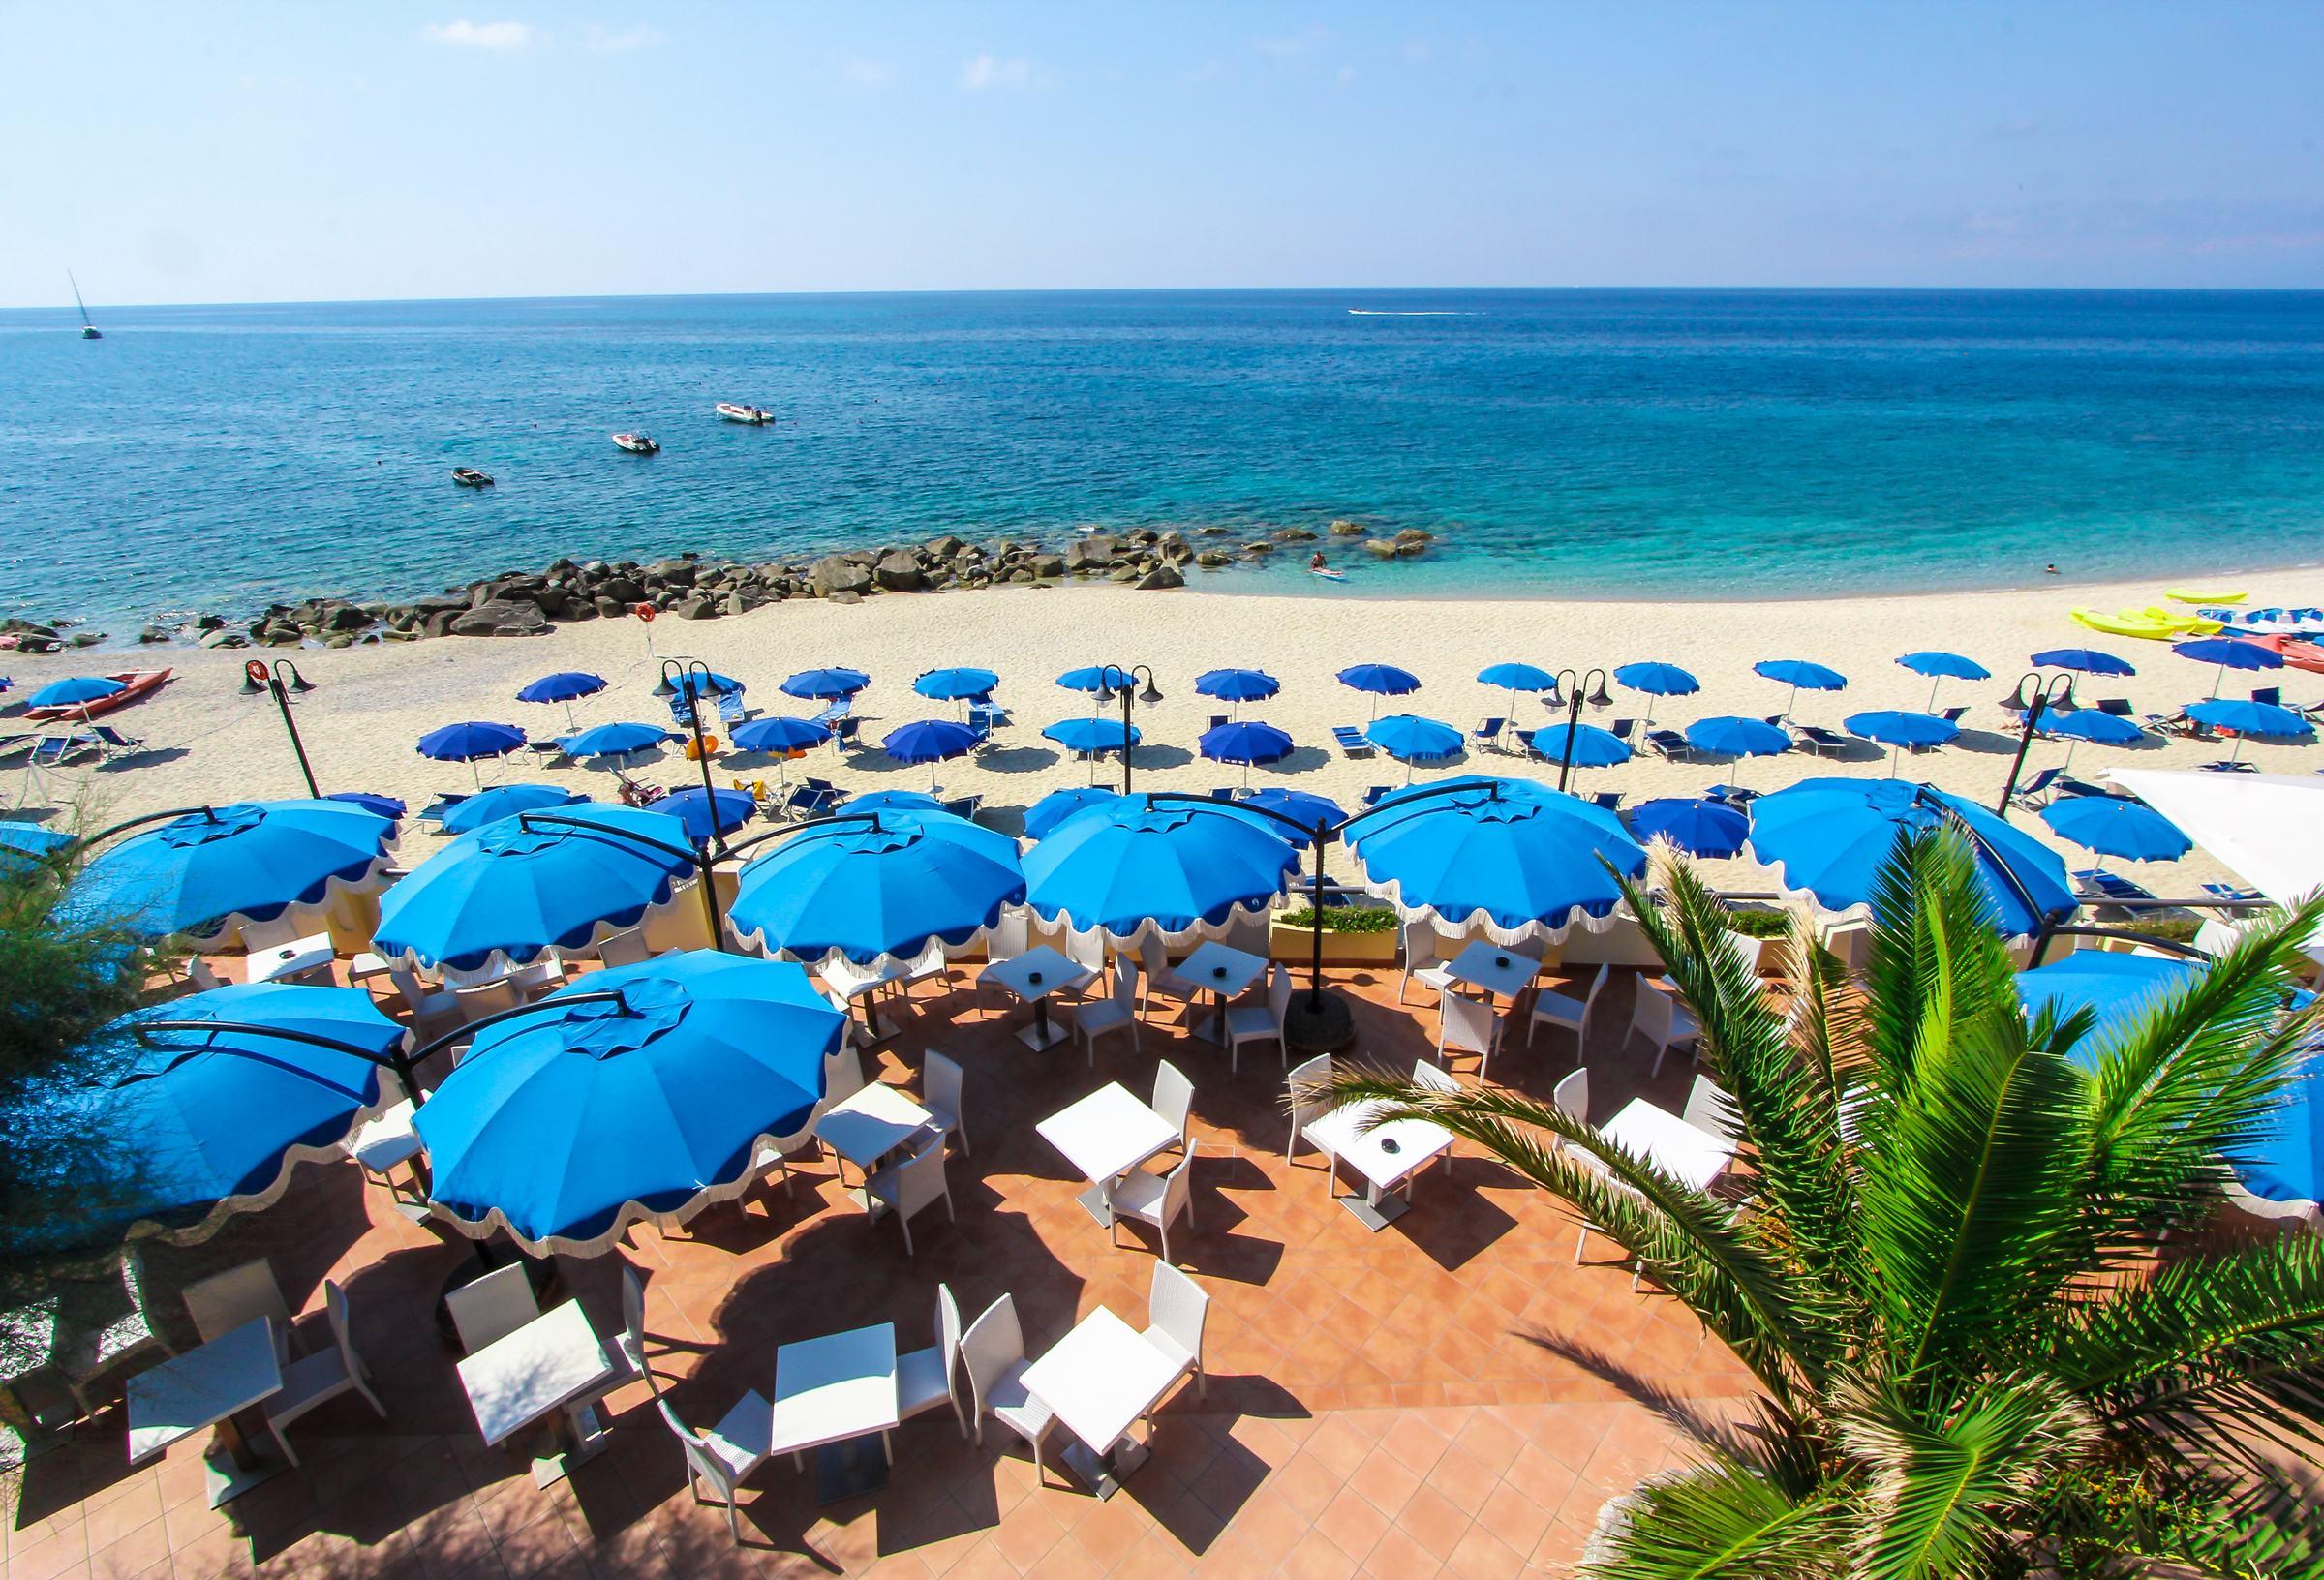 Foto de Playa del hotel San Giuseppe - lugar popular entre los conocedores del relax